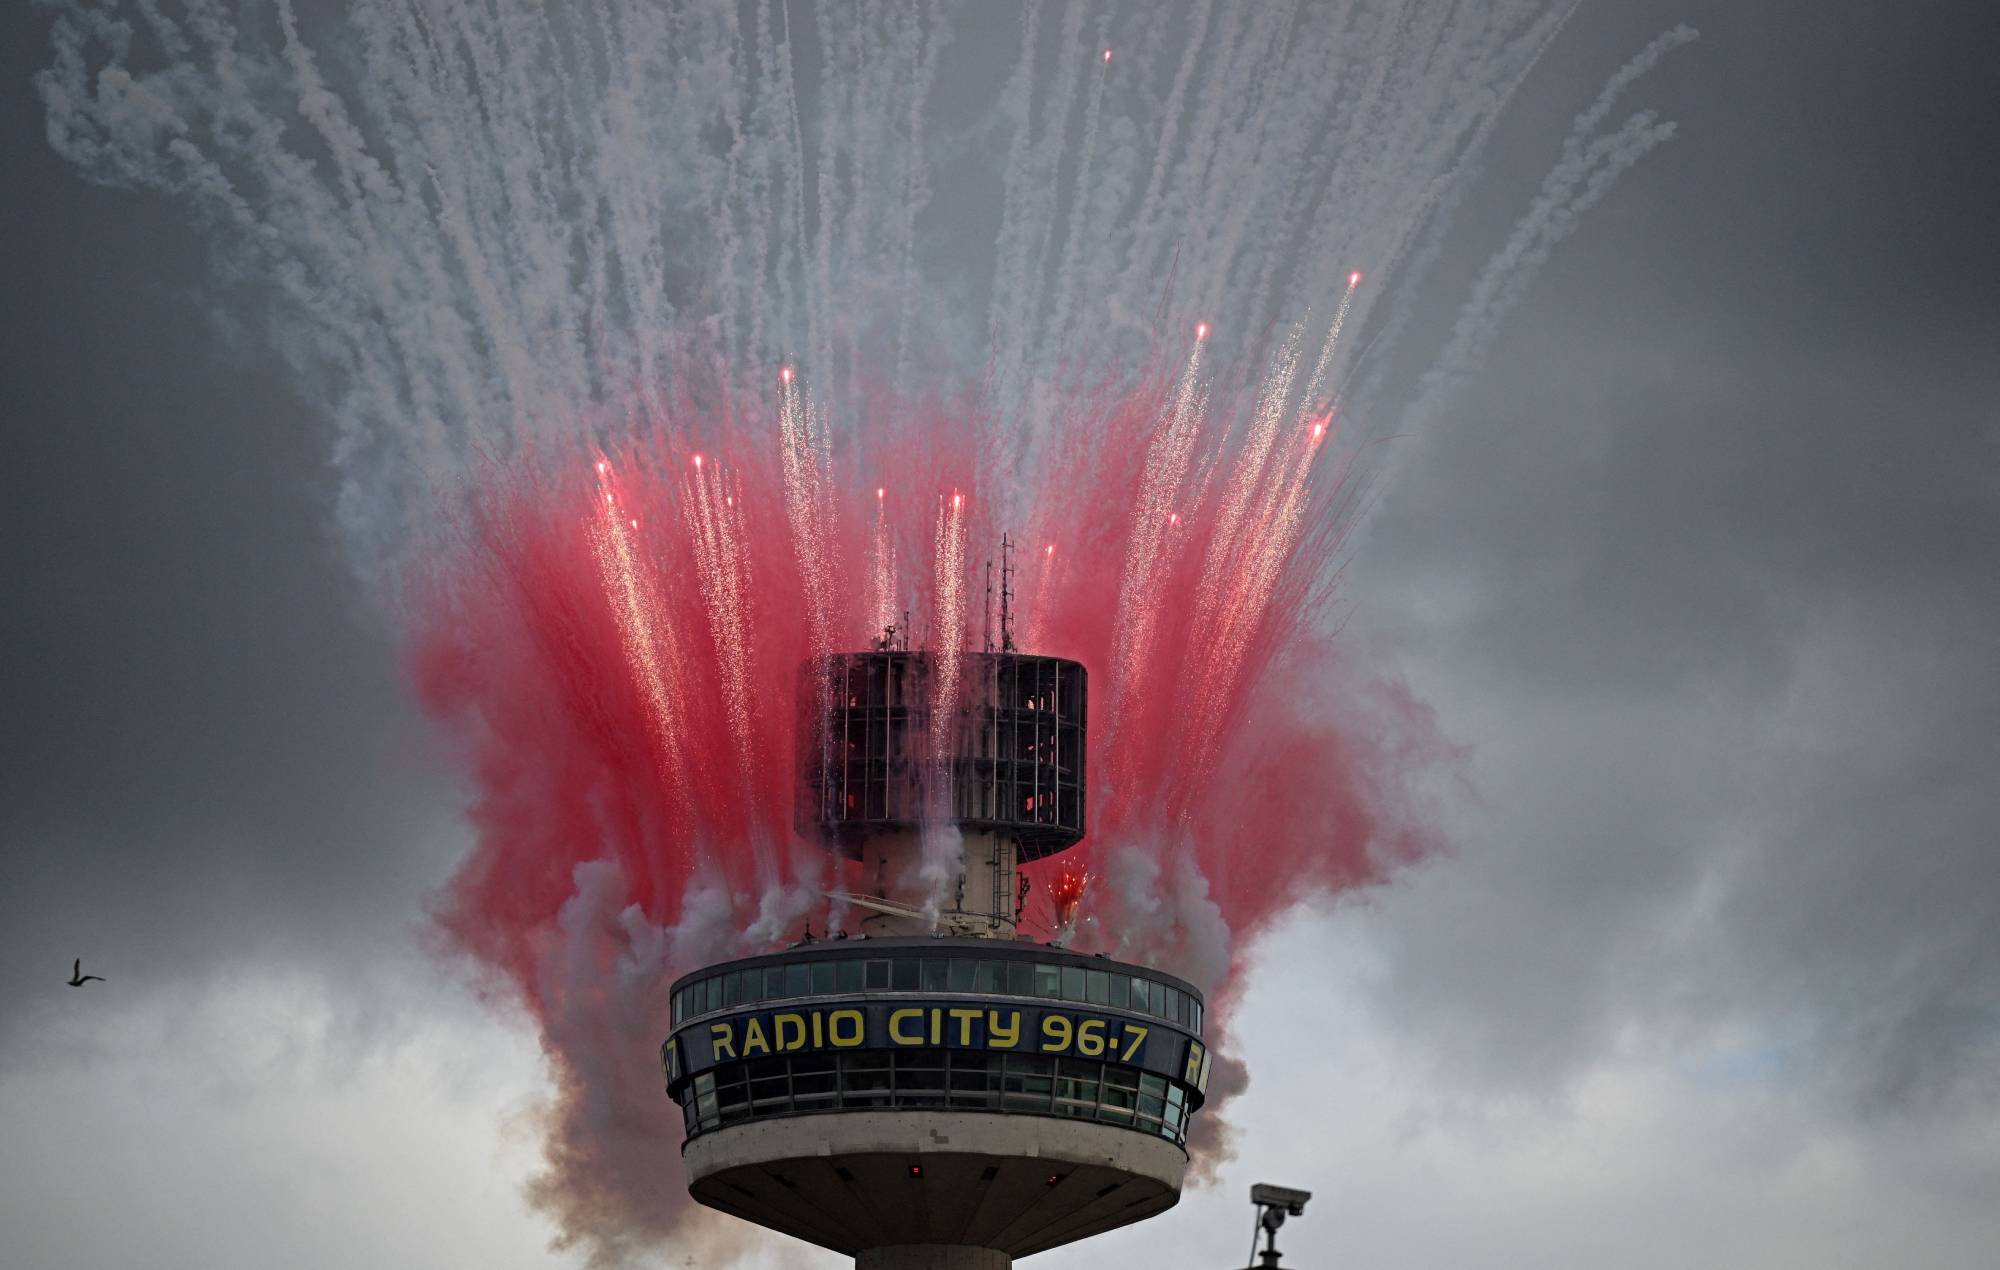 El nombre "Radio City" podría desaparecer de la emblemática torre de Liverpool